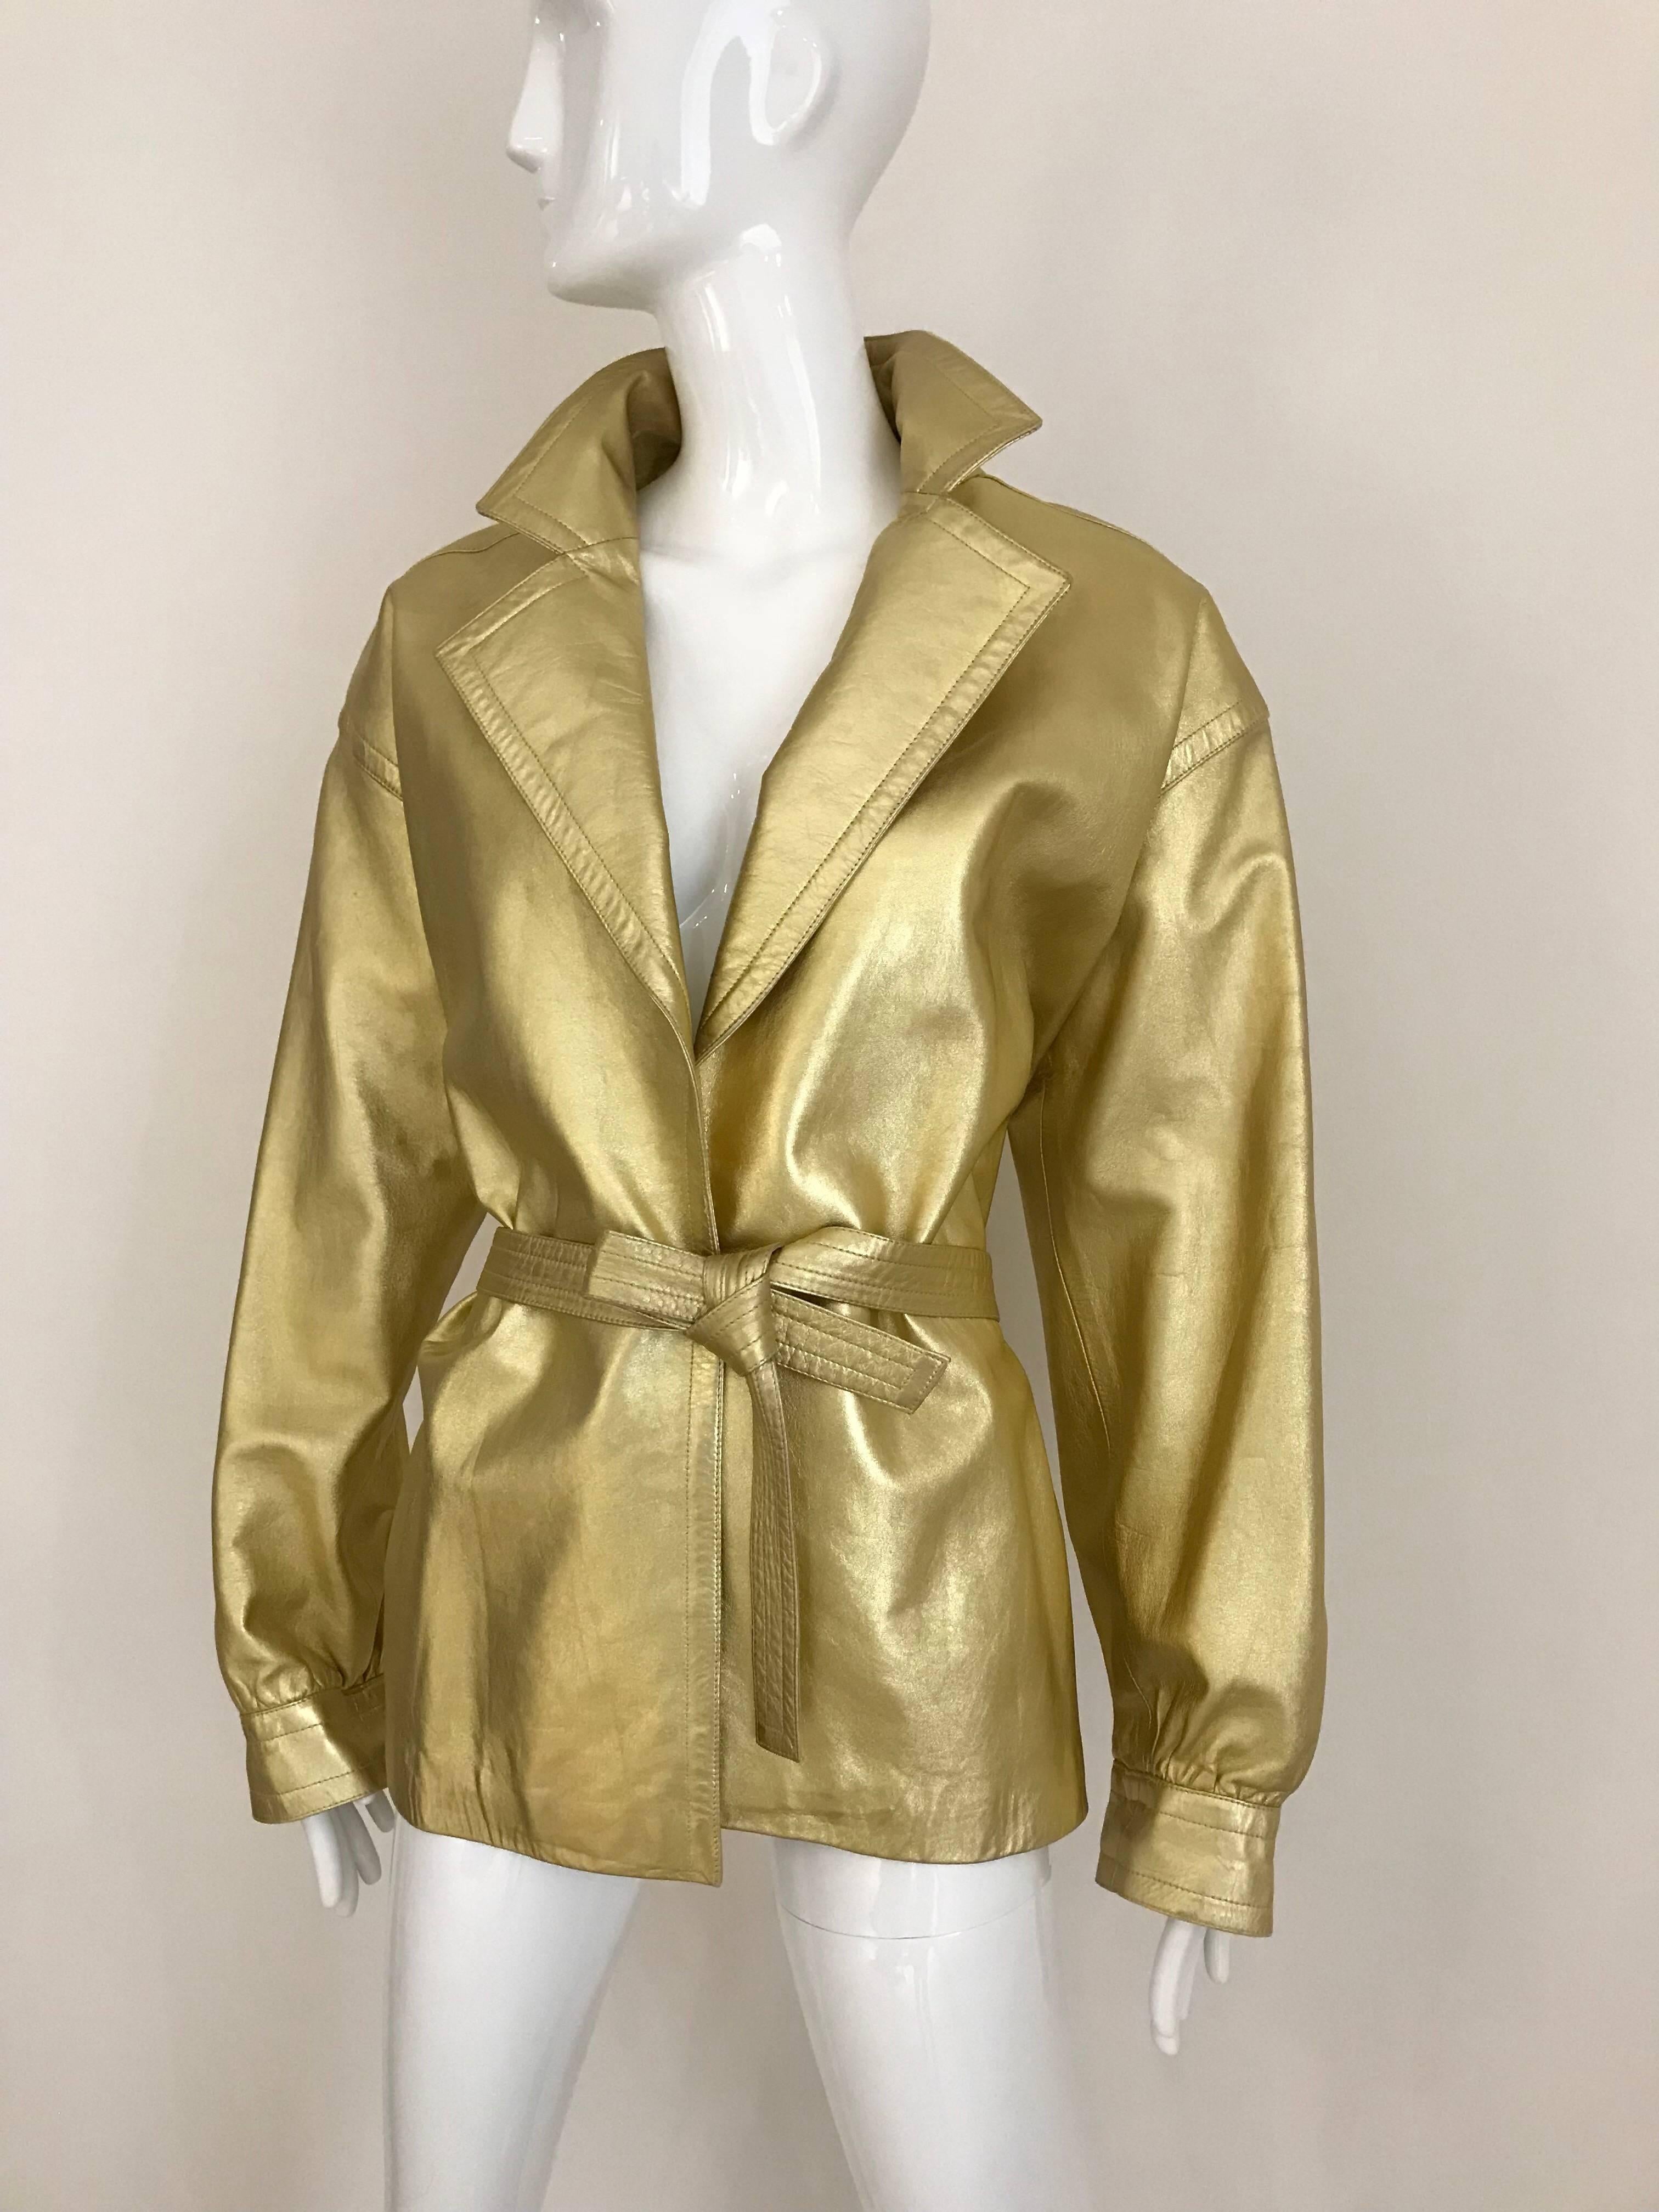 Diese rive gauche goldfarbene Lederjacke von Saint Laurent verkörpert klassisch guten Look und Stil. 
Es gibt keine Verschlüsse:: aber ein dünner goldener Ledergürtel schließt das Kleidungsstück. 
Jacke aus den 80ern mit Schulterpolstern. 

Es ist